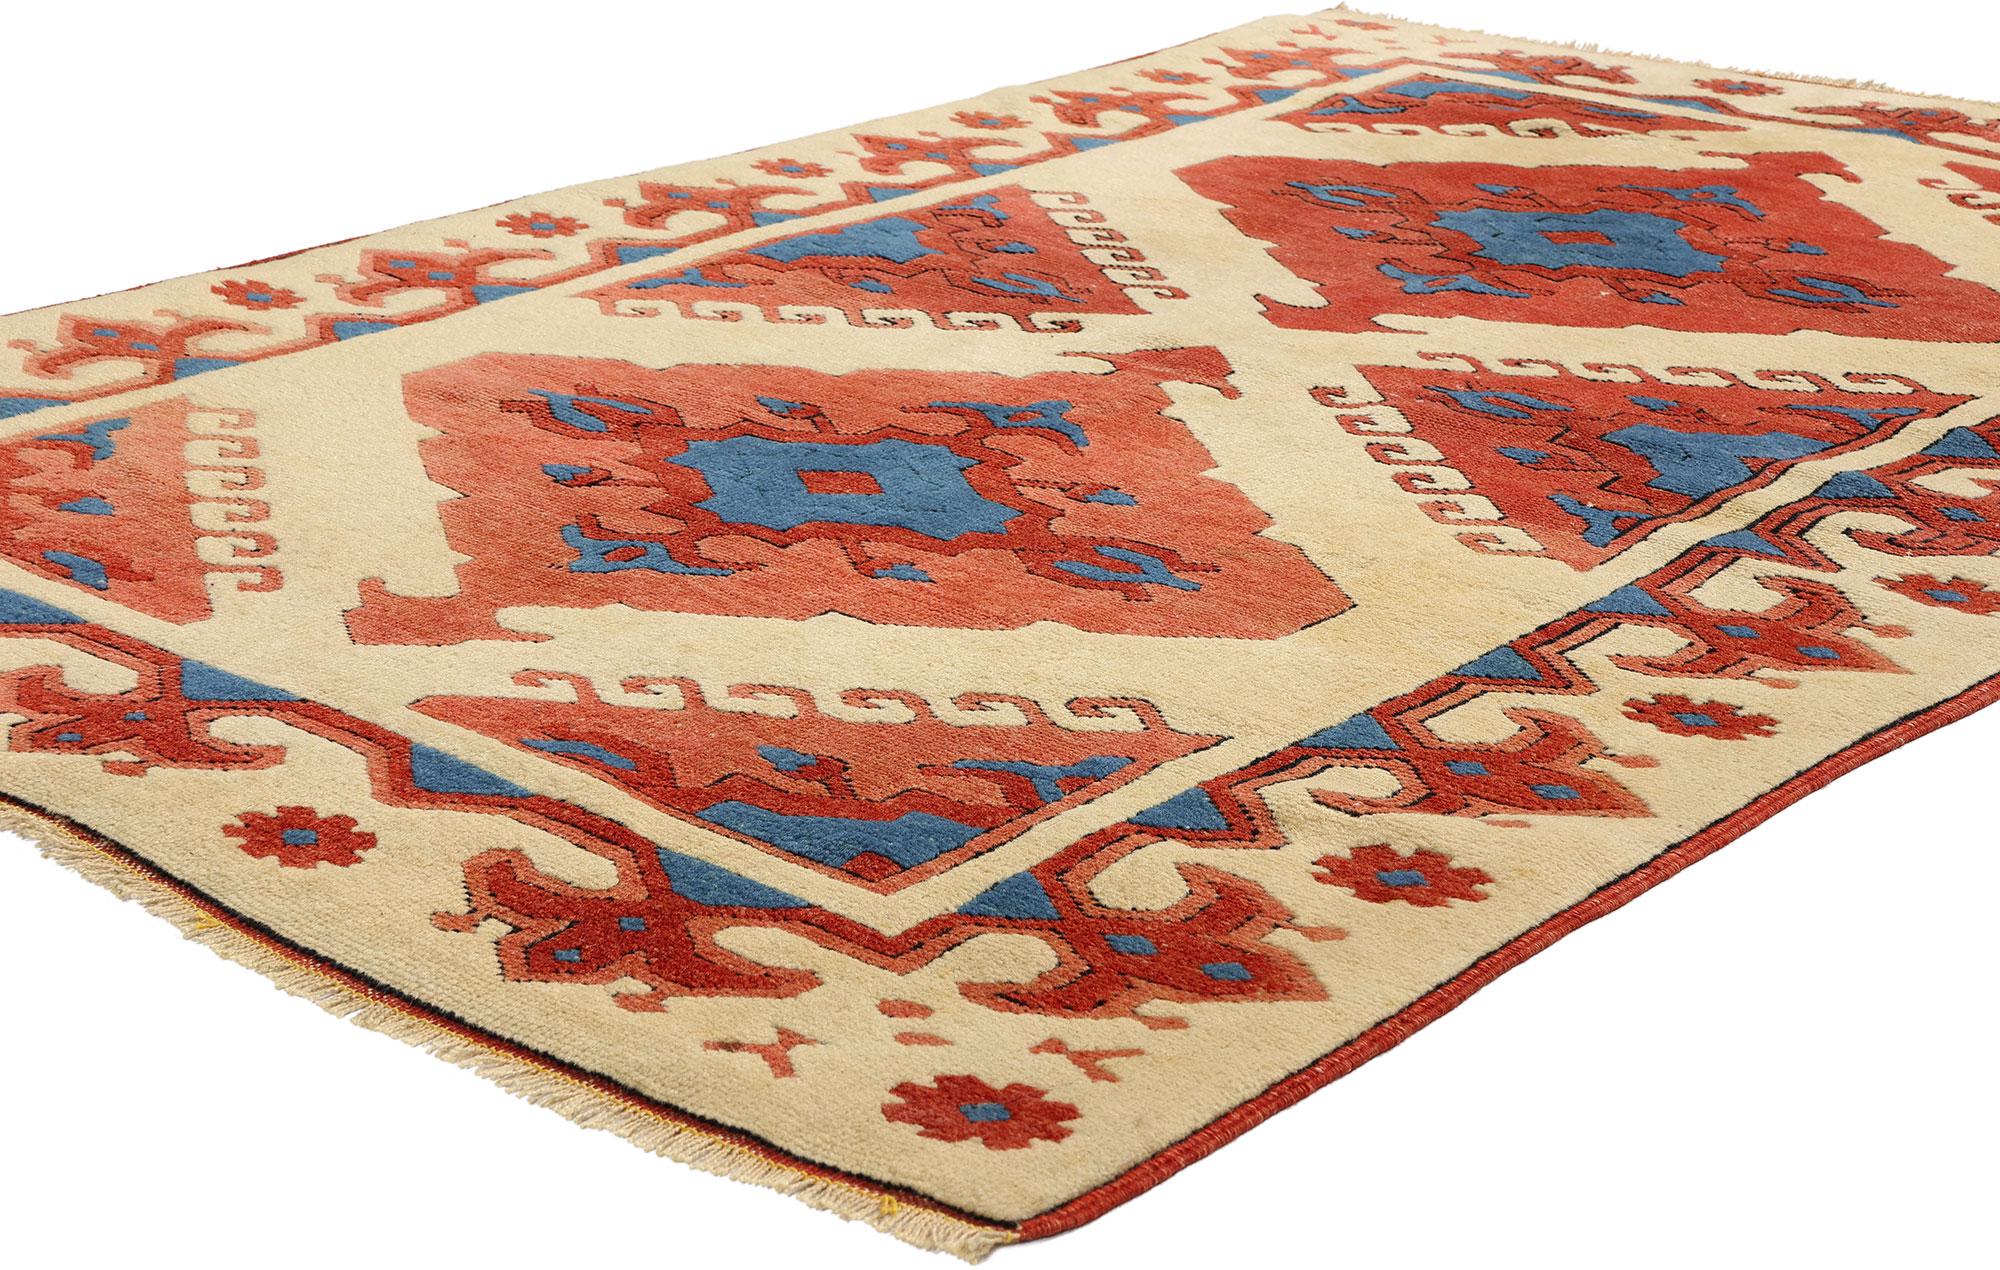 53933 Vintage Turkish Oushak Rug, 03'09 x 05'10. Türkische Oushak-Konya-Teppiche aus der Region Oushak in Westanatolien, Türkei, sind für ihre komplizierten geometrischen oder floralen Muster bekannt, die typischerweise Motive wie Medaillons und